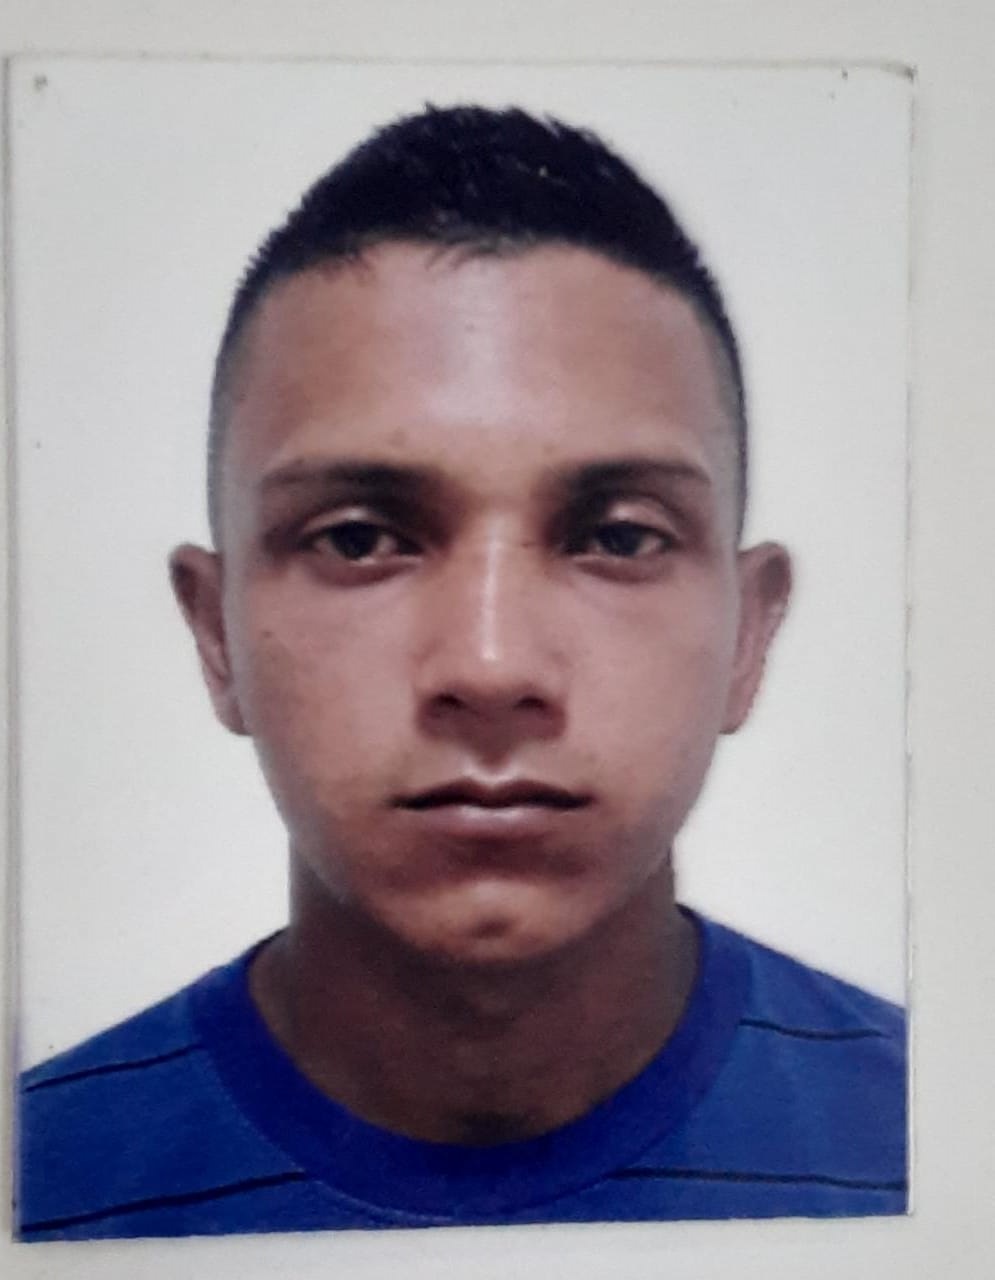 PC-AM divulga imagem de jovem que desapareceu no Gilberto Mestrinho